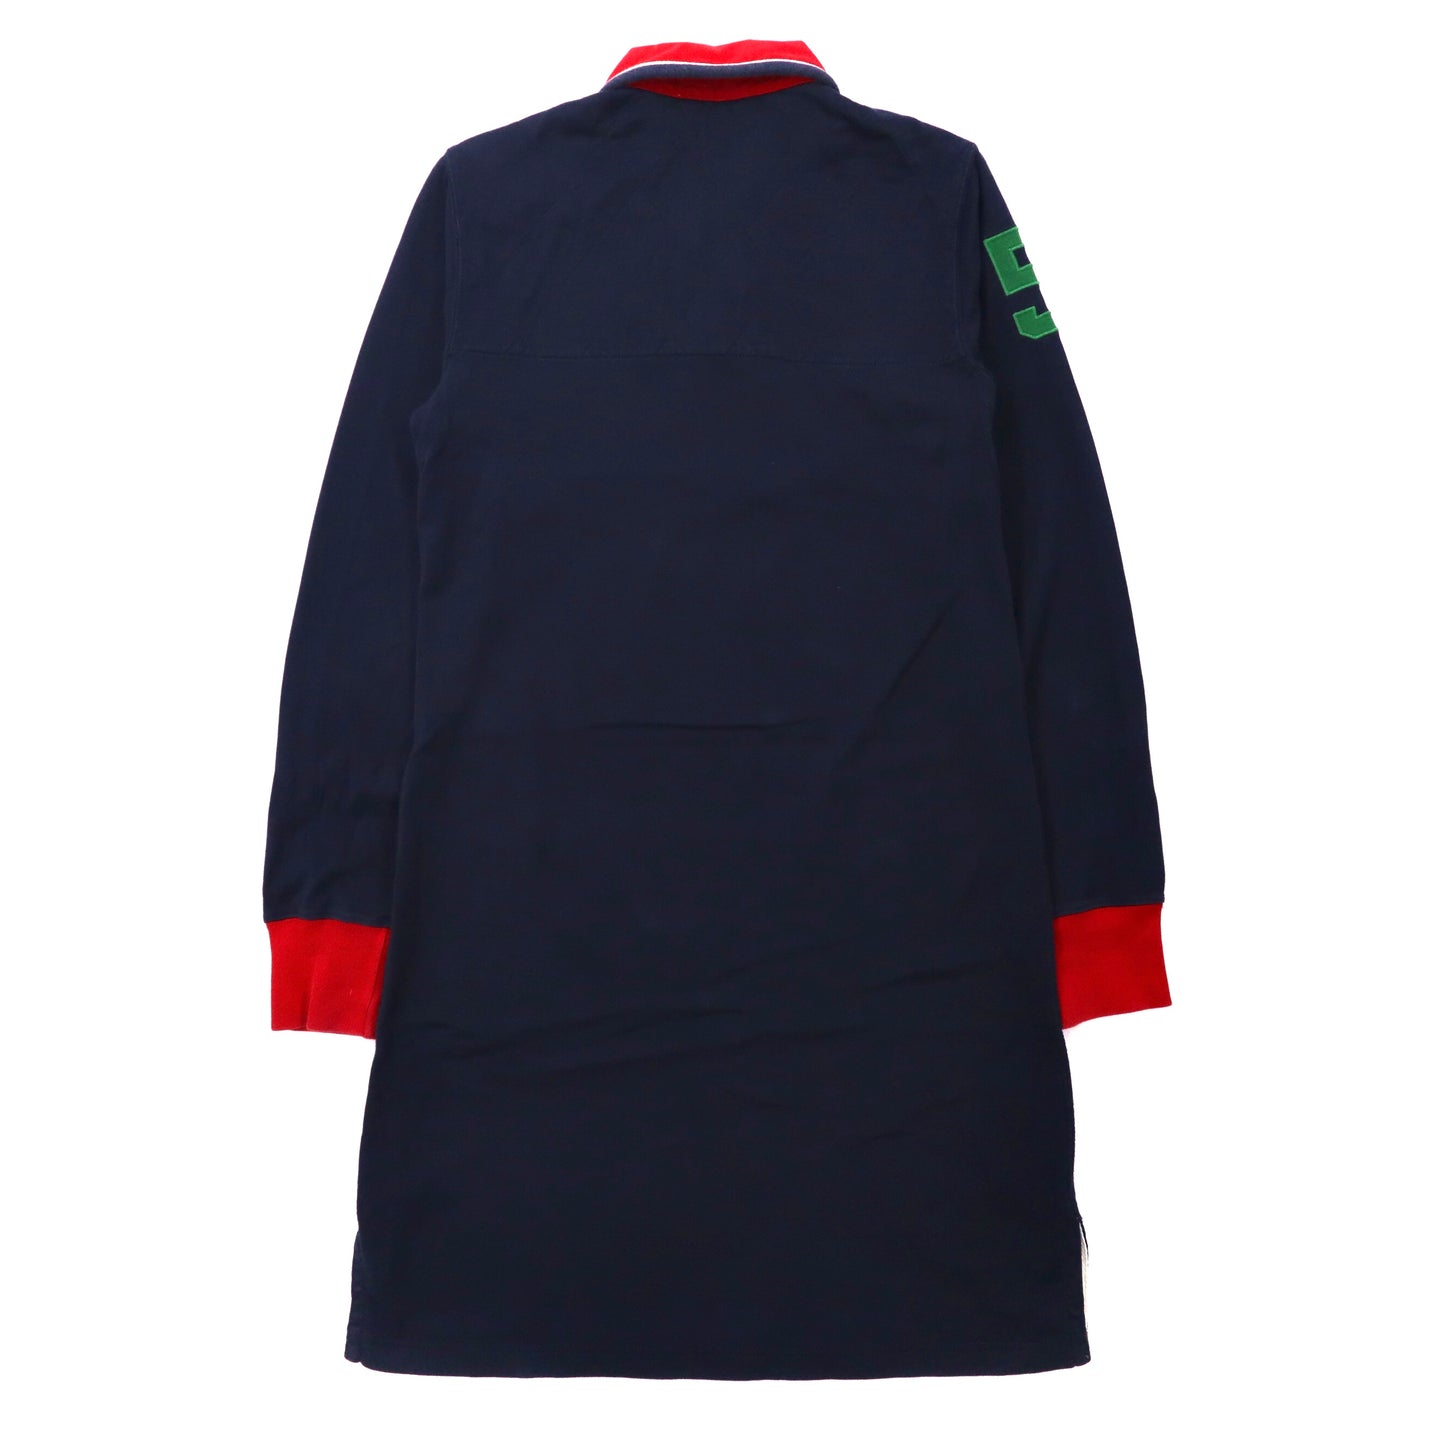 RALPH LAUREN RUGBY SHIRT Dress L Navy Cotton Emblem logo 